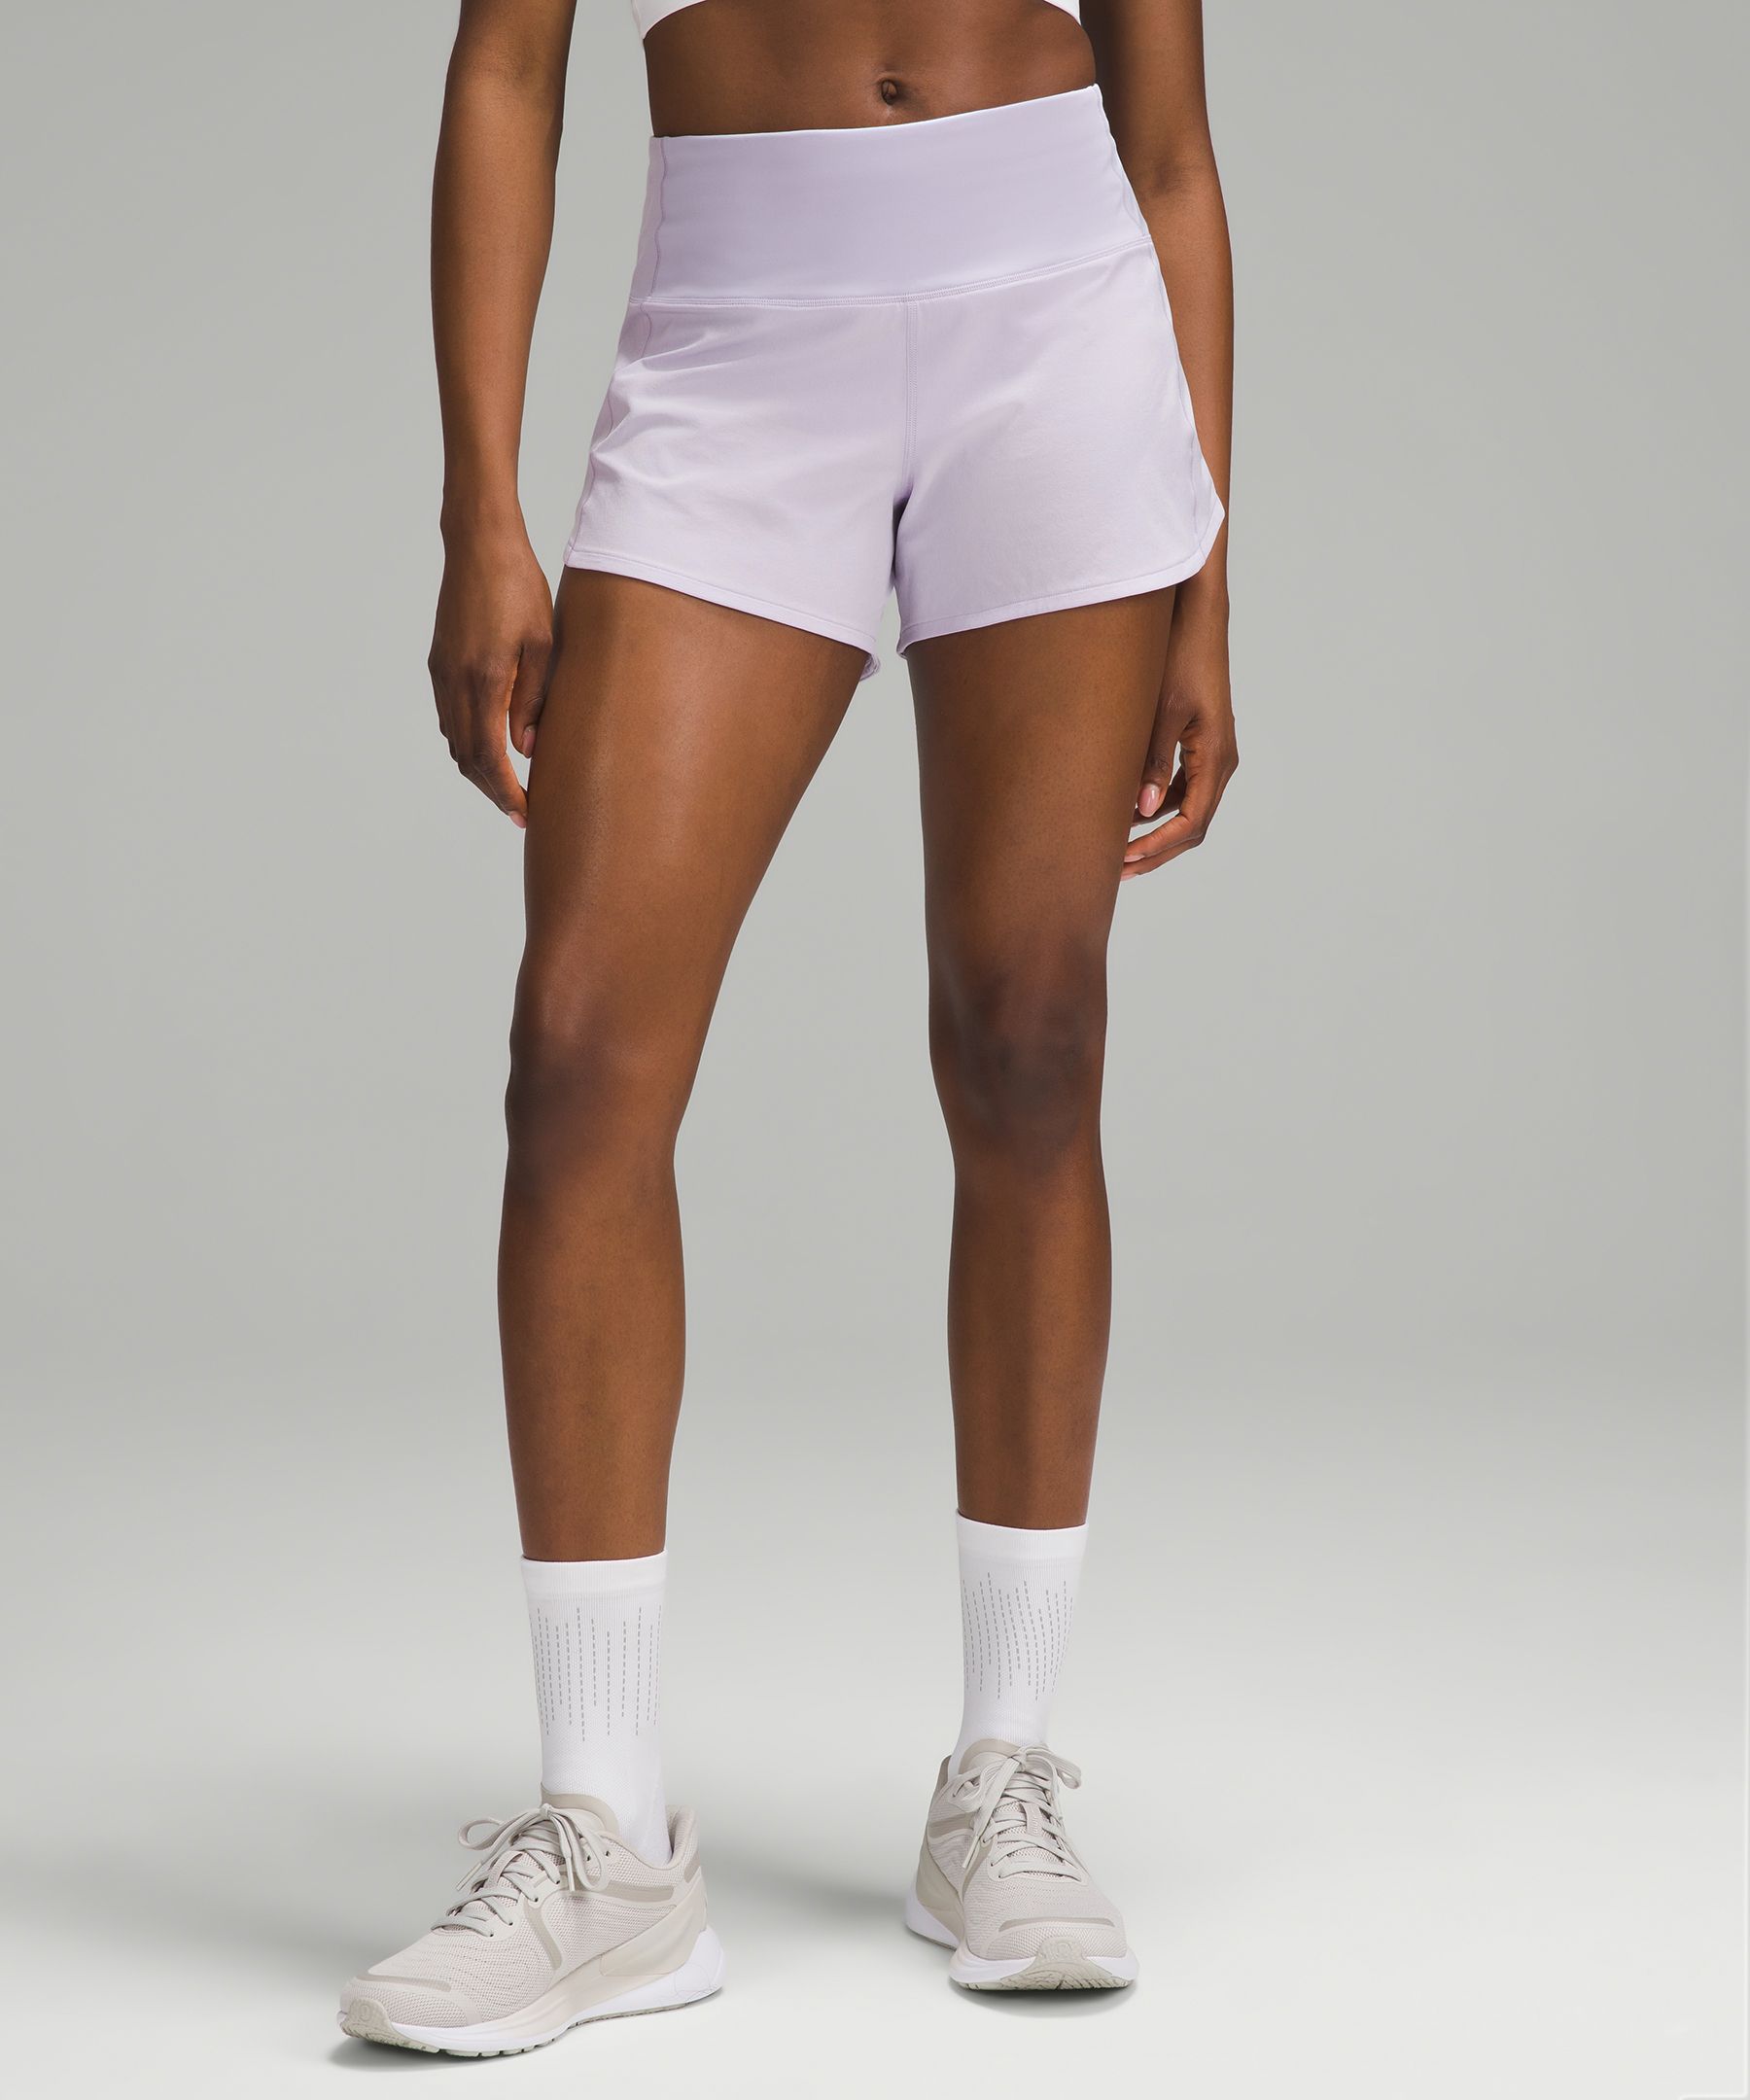 New Lululemon Shorts size 4 : BidBud